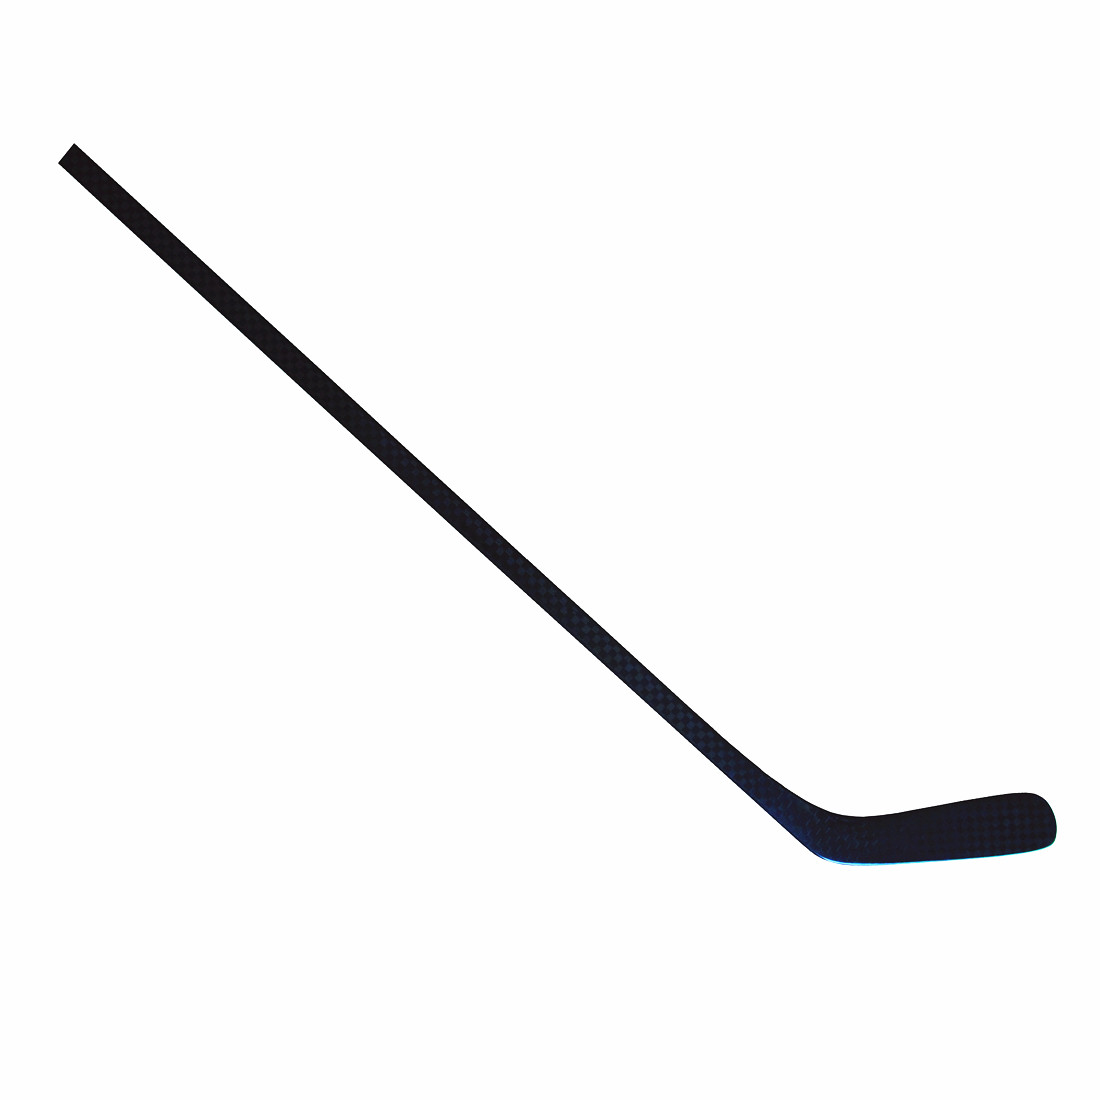 Hokey stick--Hockey stick